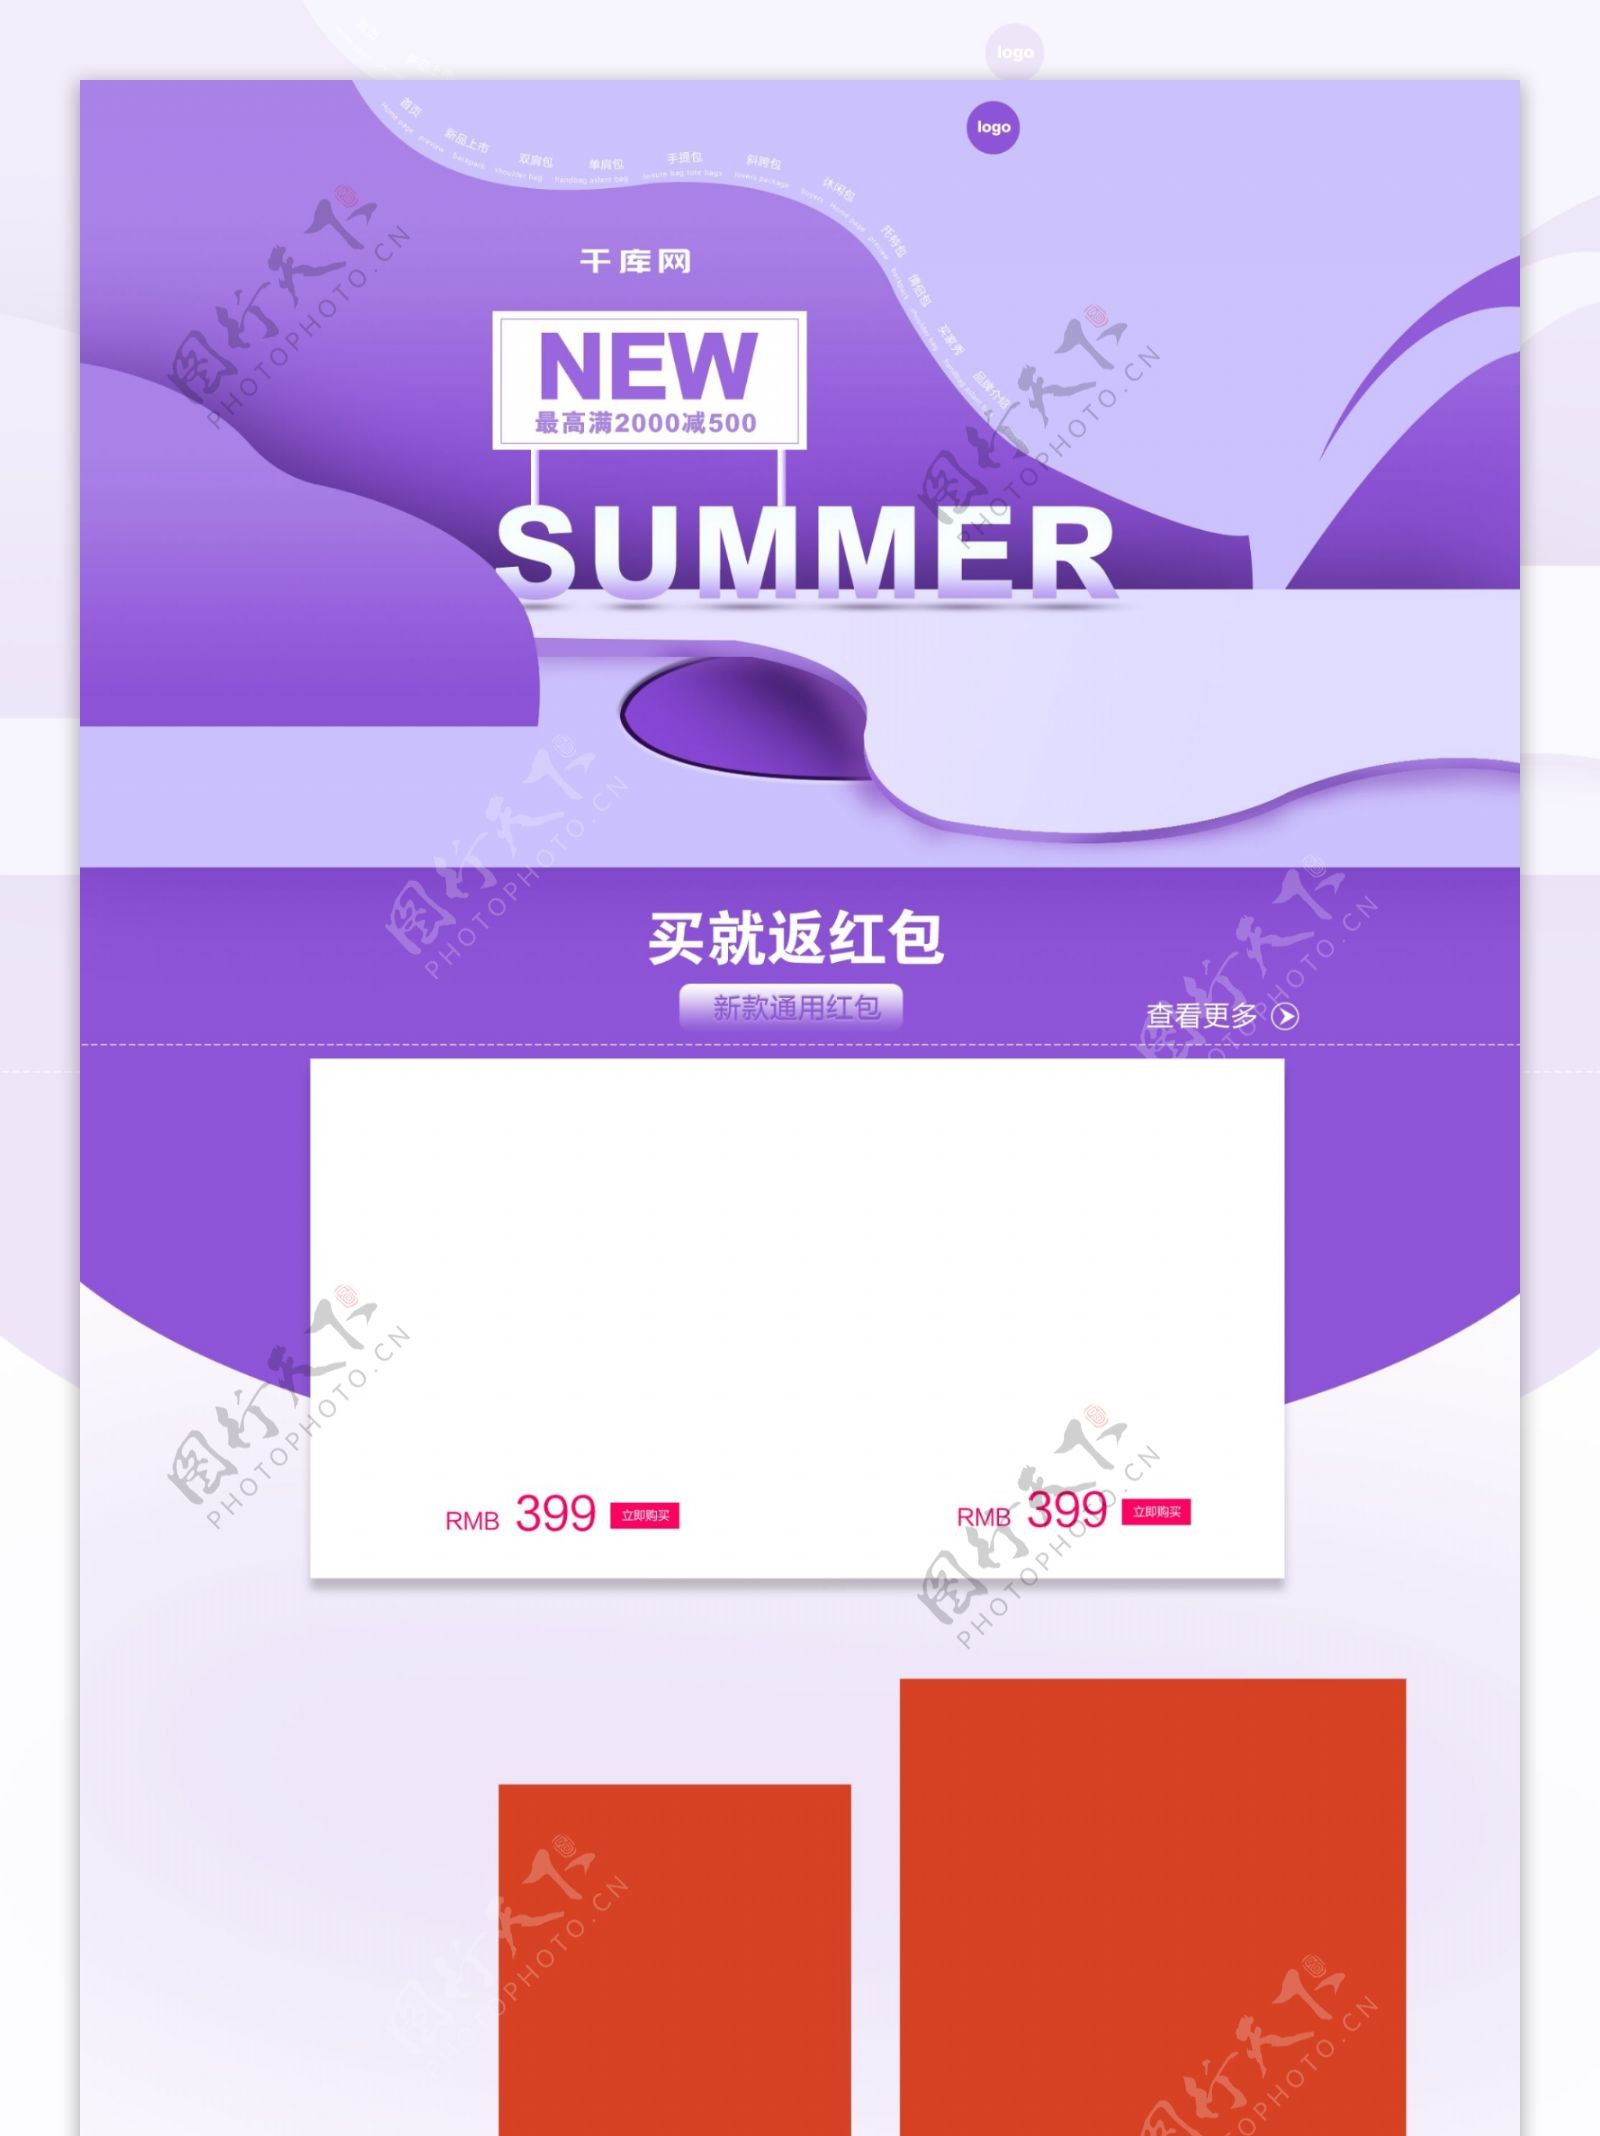 紫色调夏季新品上市箱包饰品首页